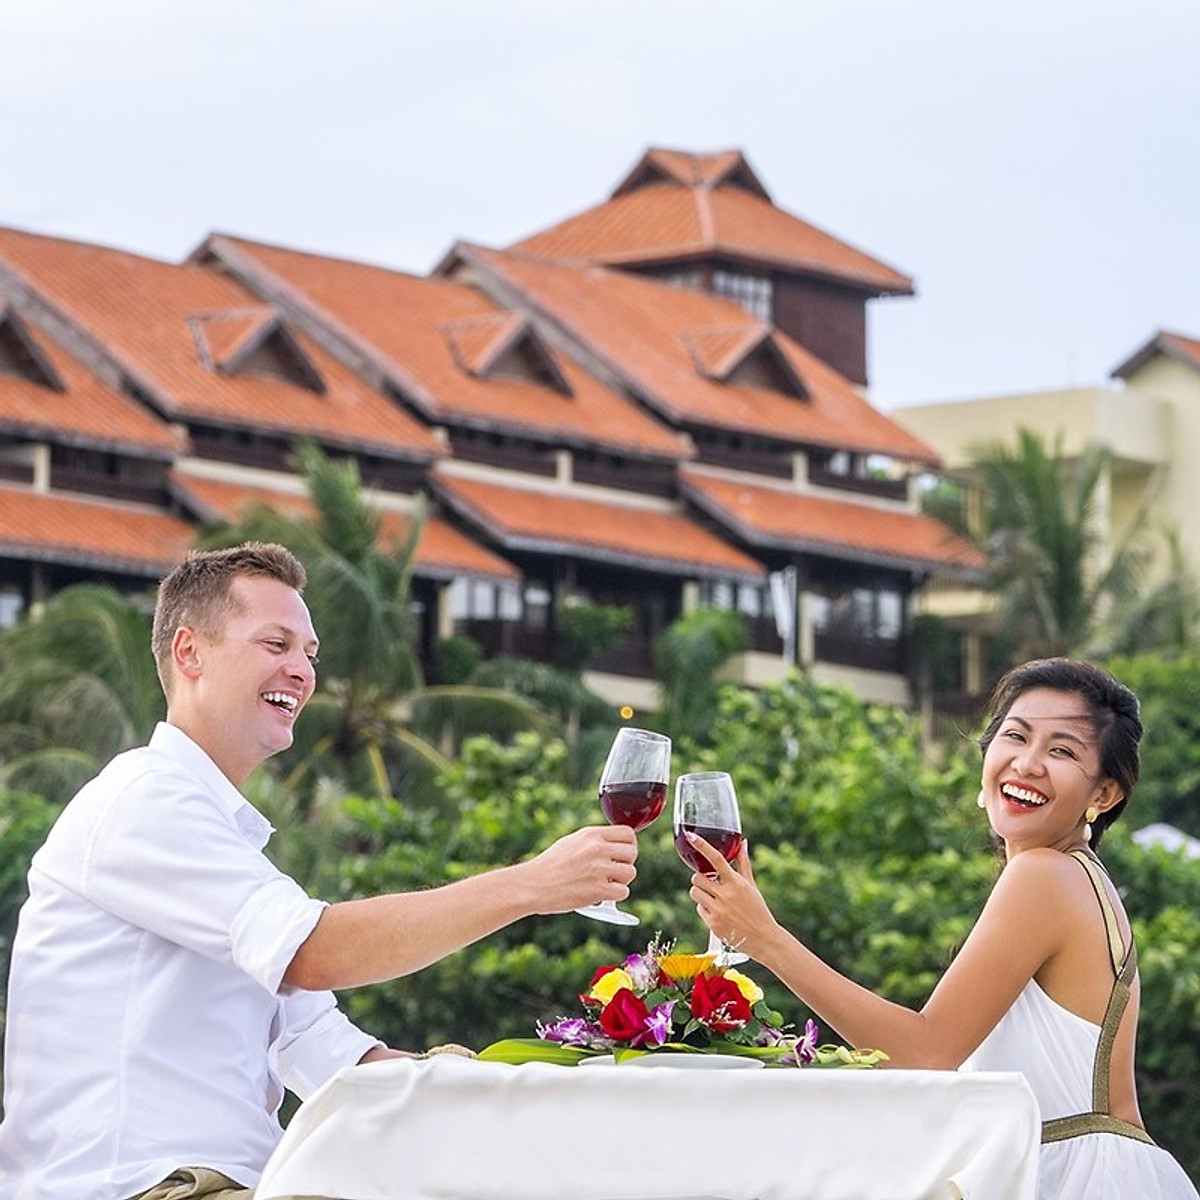 Romana Resort 4* Mũi Né Phan Thiết - Ăn 03 Bữa, Phòng Hướng Biển, Hồ Bơi Lớn, Bãi Biển Riêng